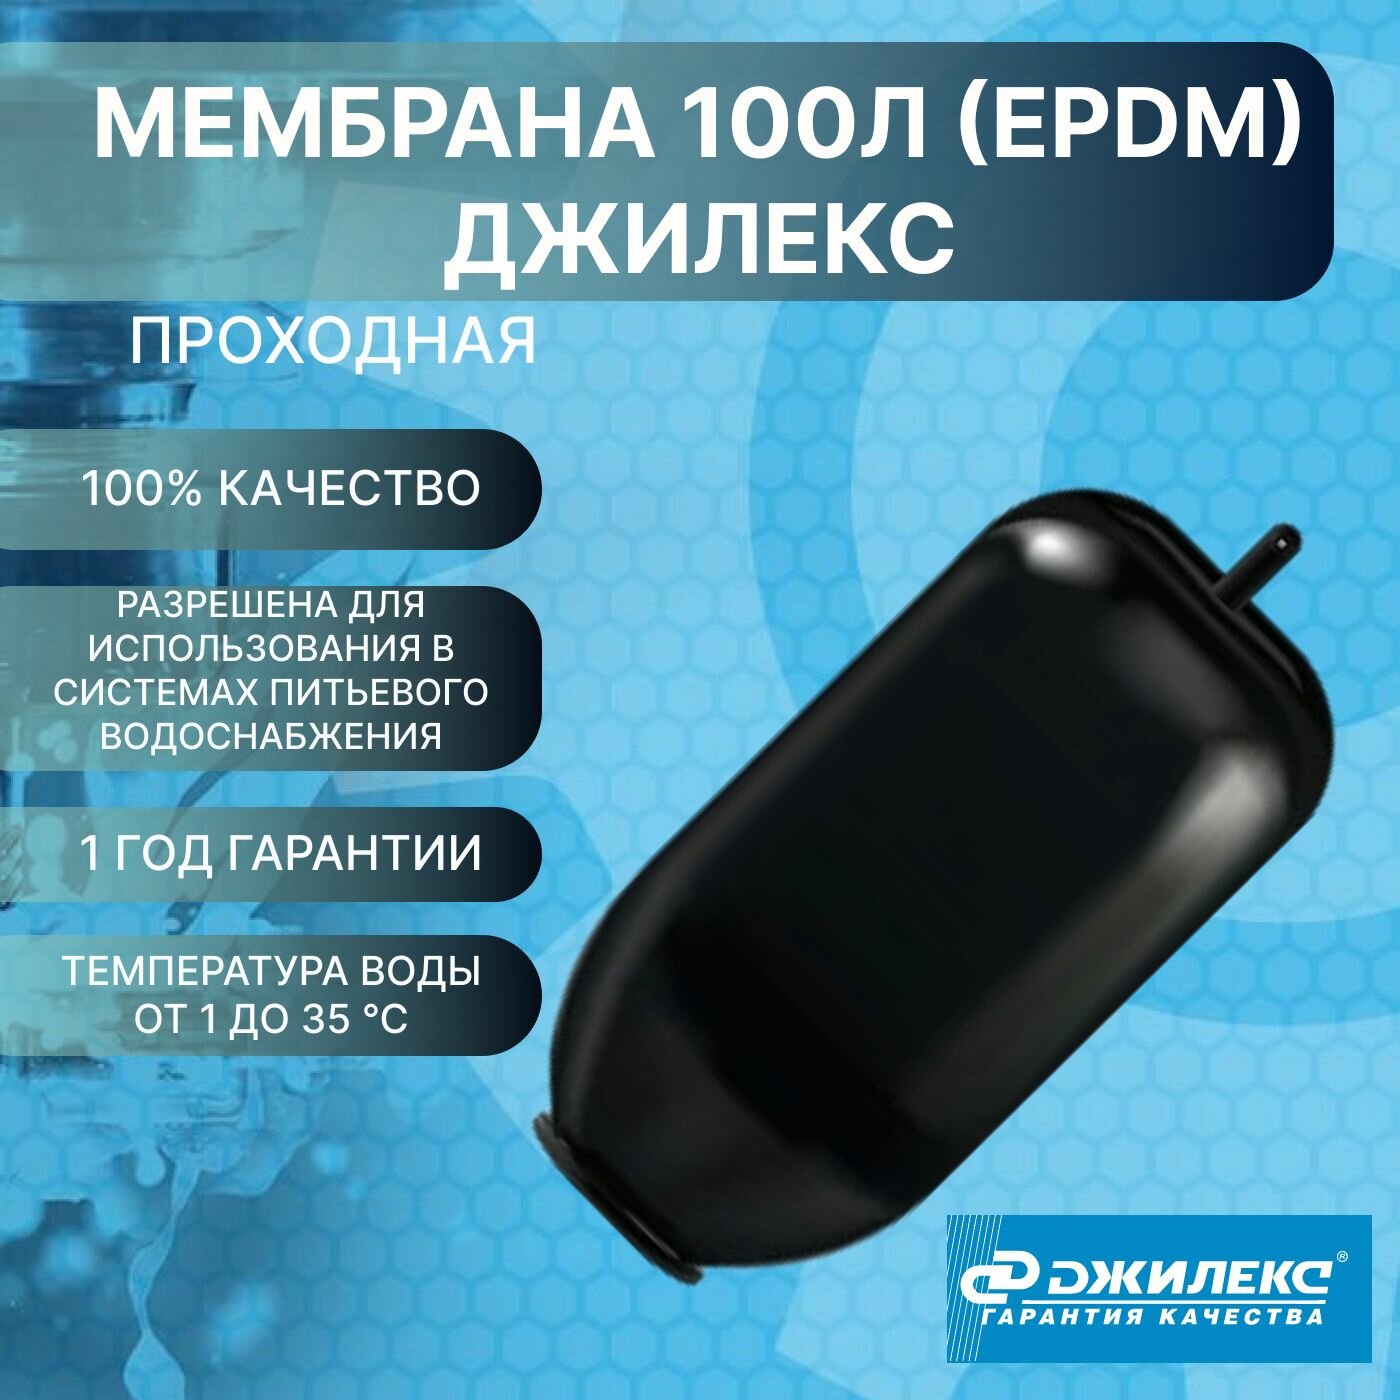 Мембрана 100л проходная (EPDM) Джилекс 8987